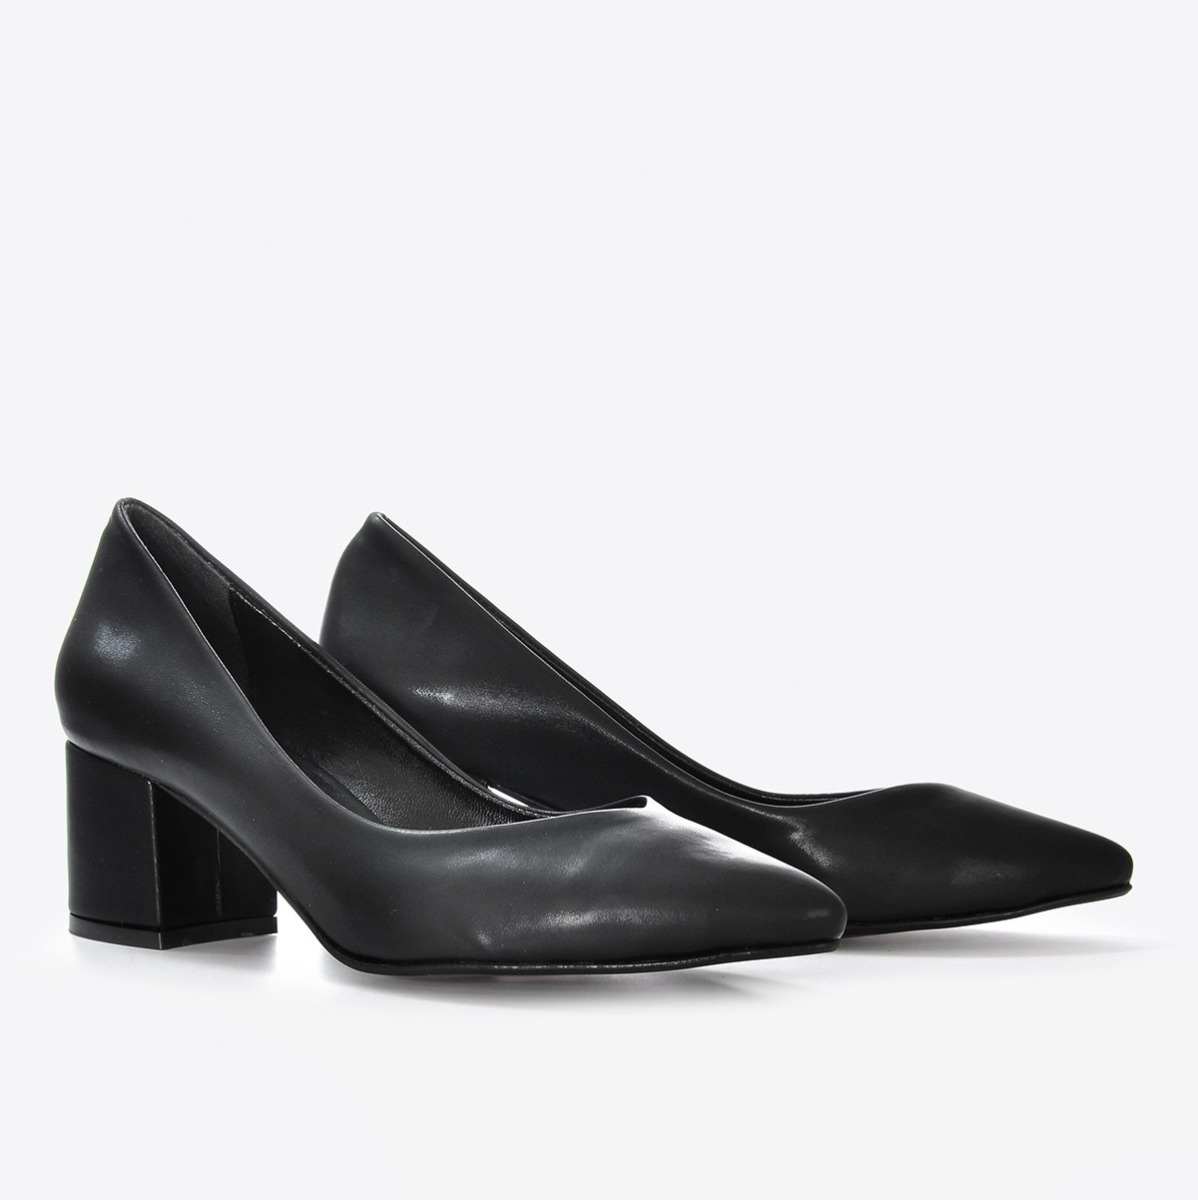 Flo Kadın Siyah Kumaş Klasik Topuklu Ayakkabı VZN21-040Y. 4